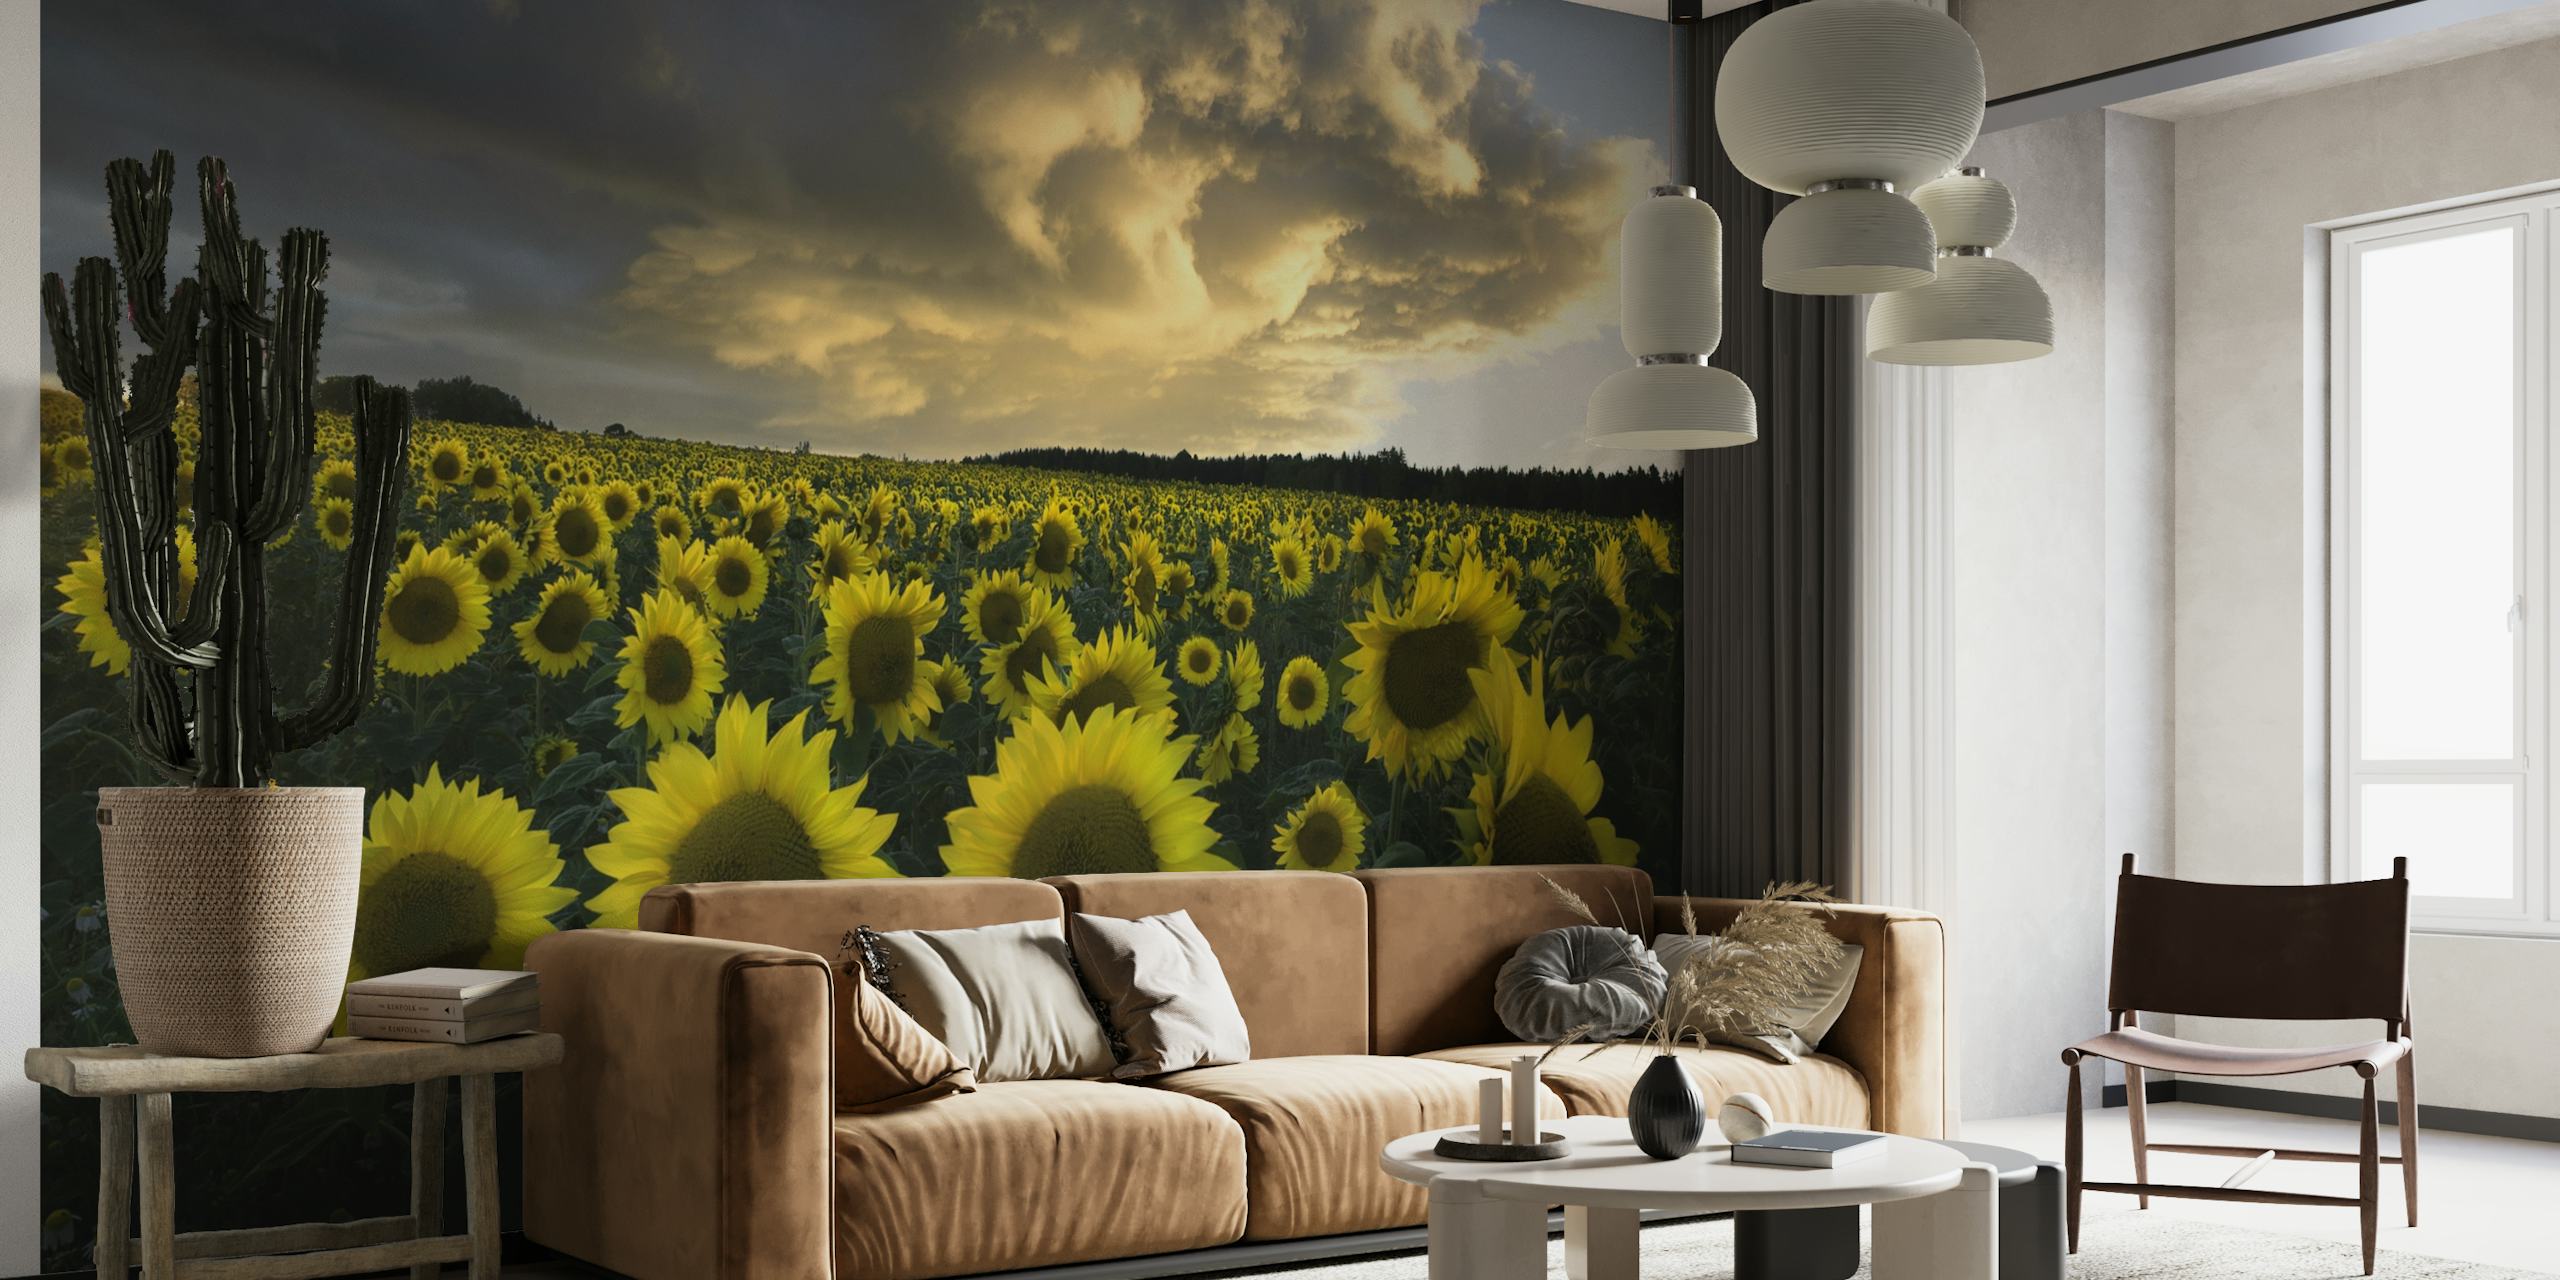 Mural de girasoles en Suecia que muestra un campo de girasoles en flor bajo un cielo nublado